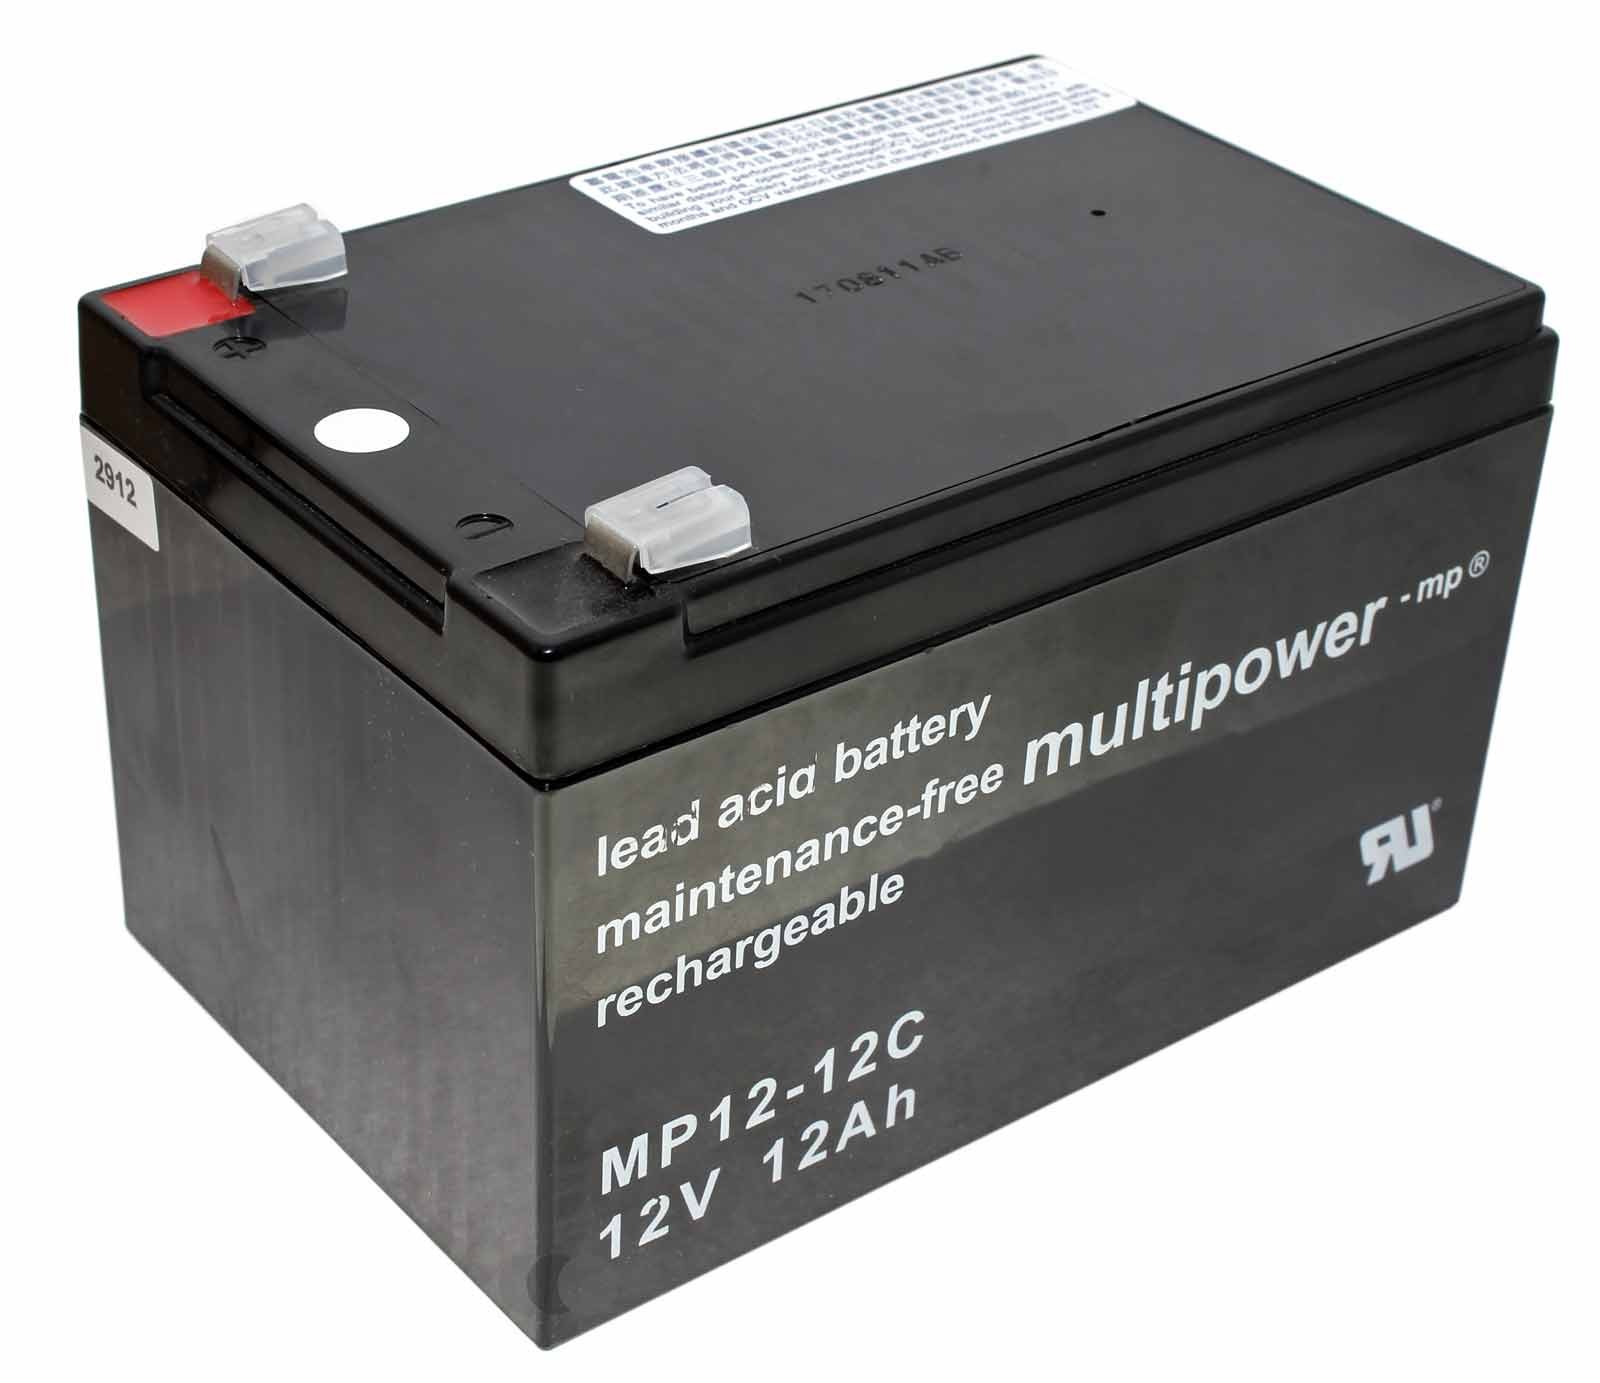 Multipower MP3.4-12 Blei Gel Akku mit 12 Volt, 12Ah Kapazität und 6,3mm Faston Kontakten